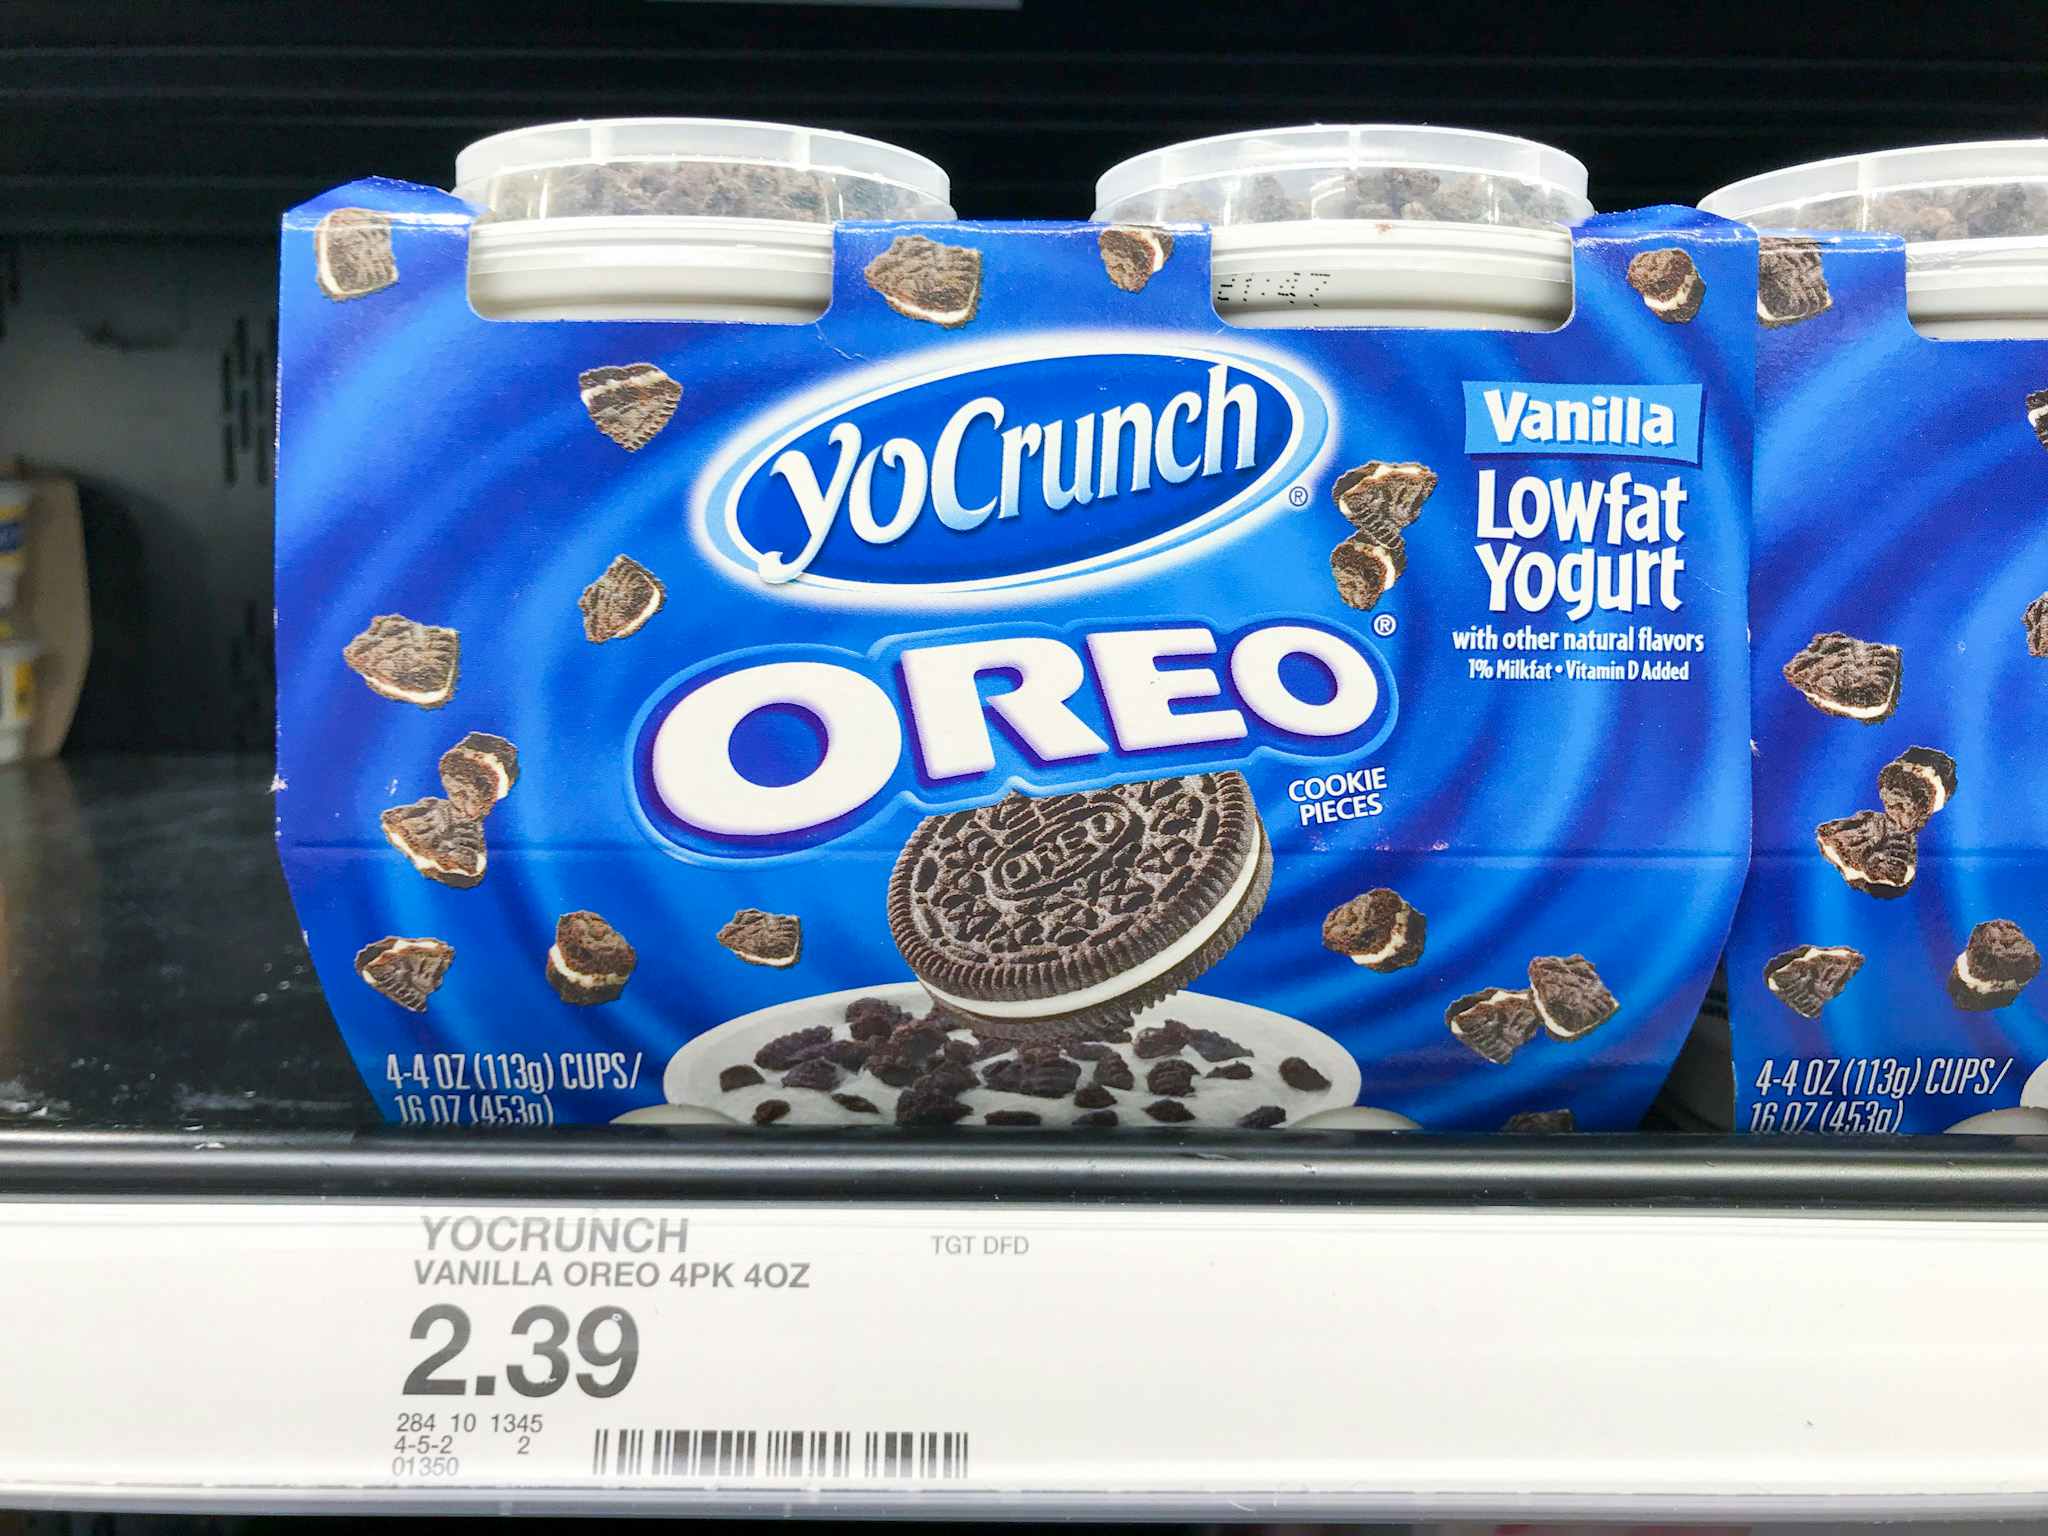 yocrunch yogurt on a target shelf